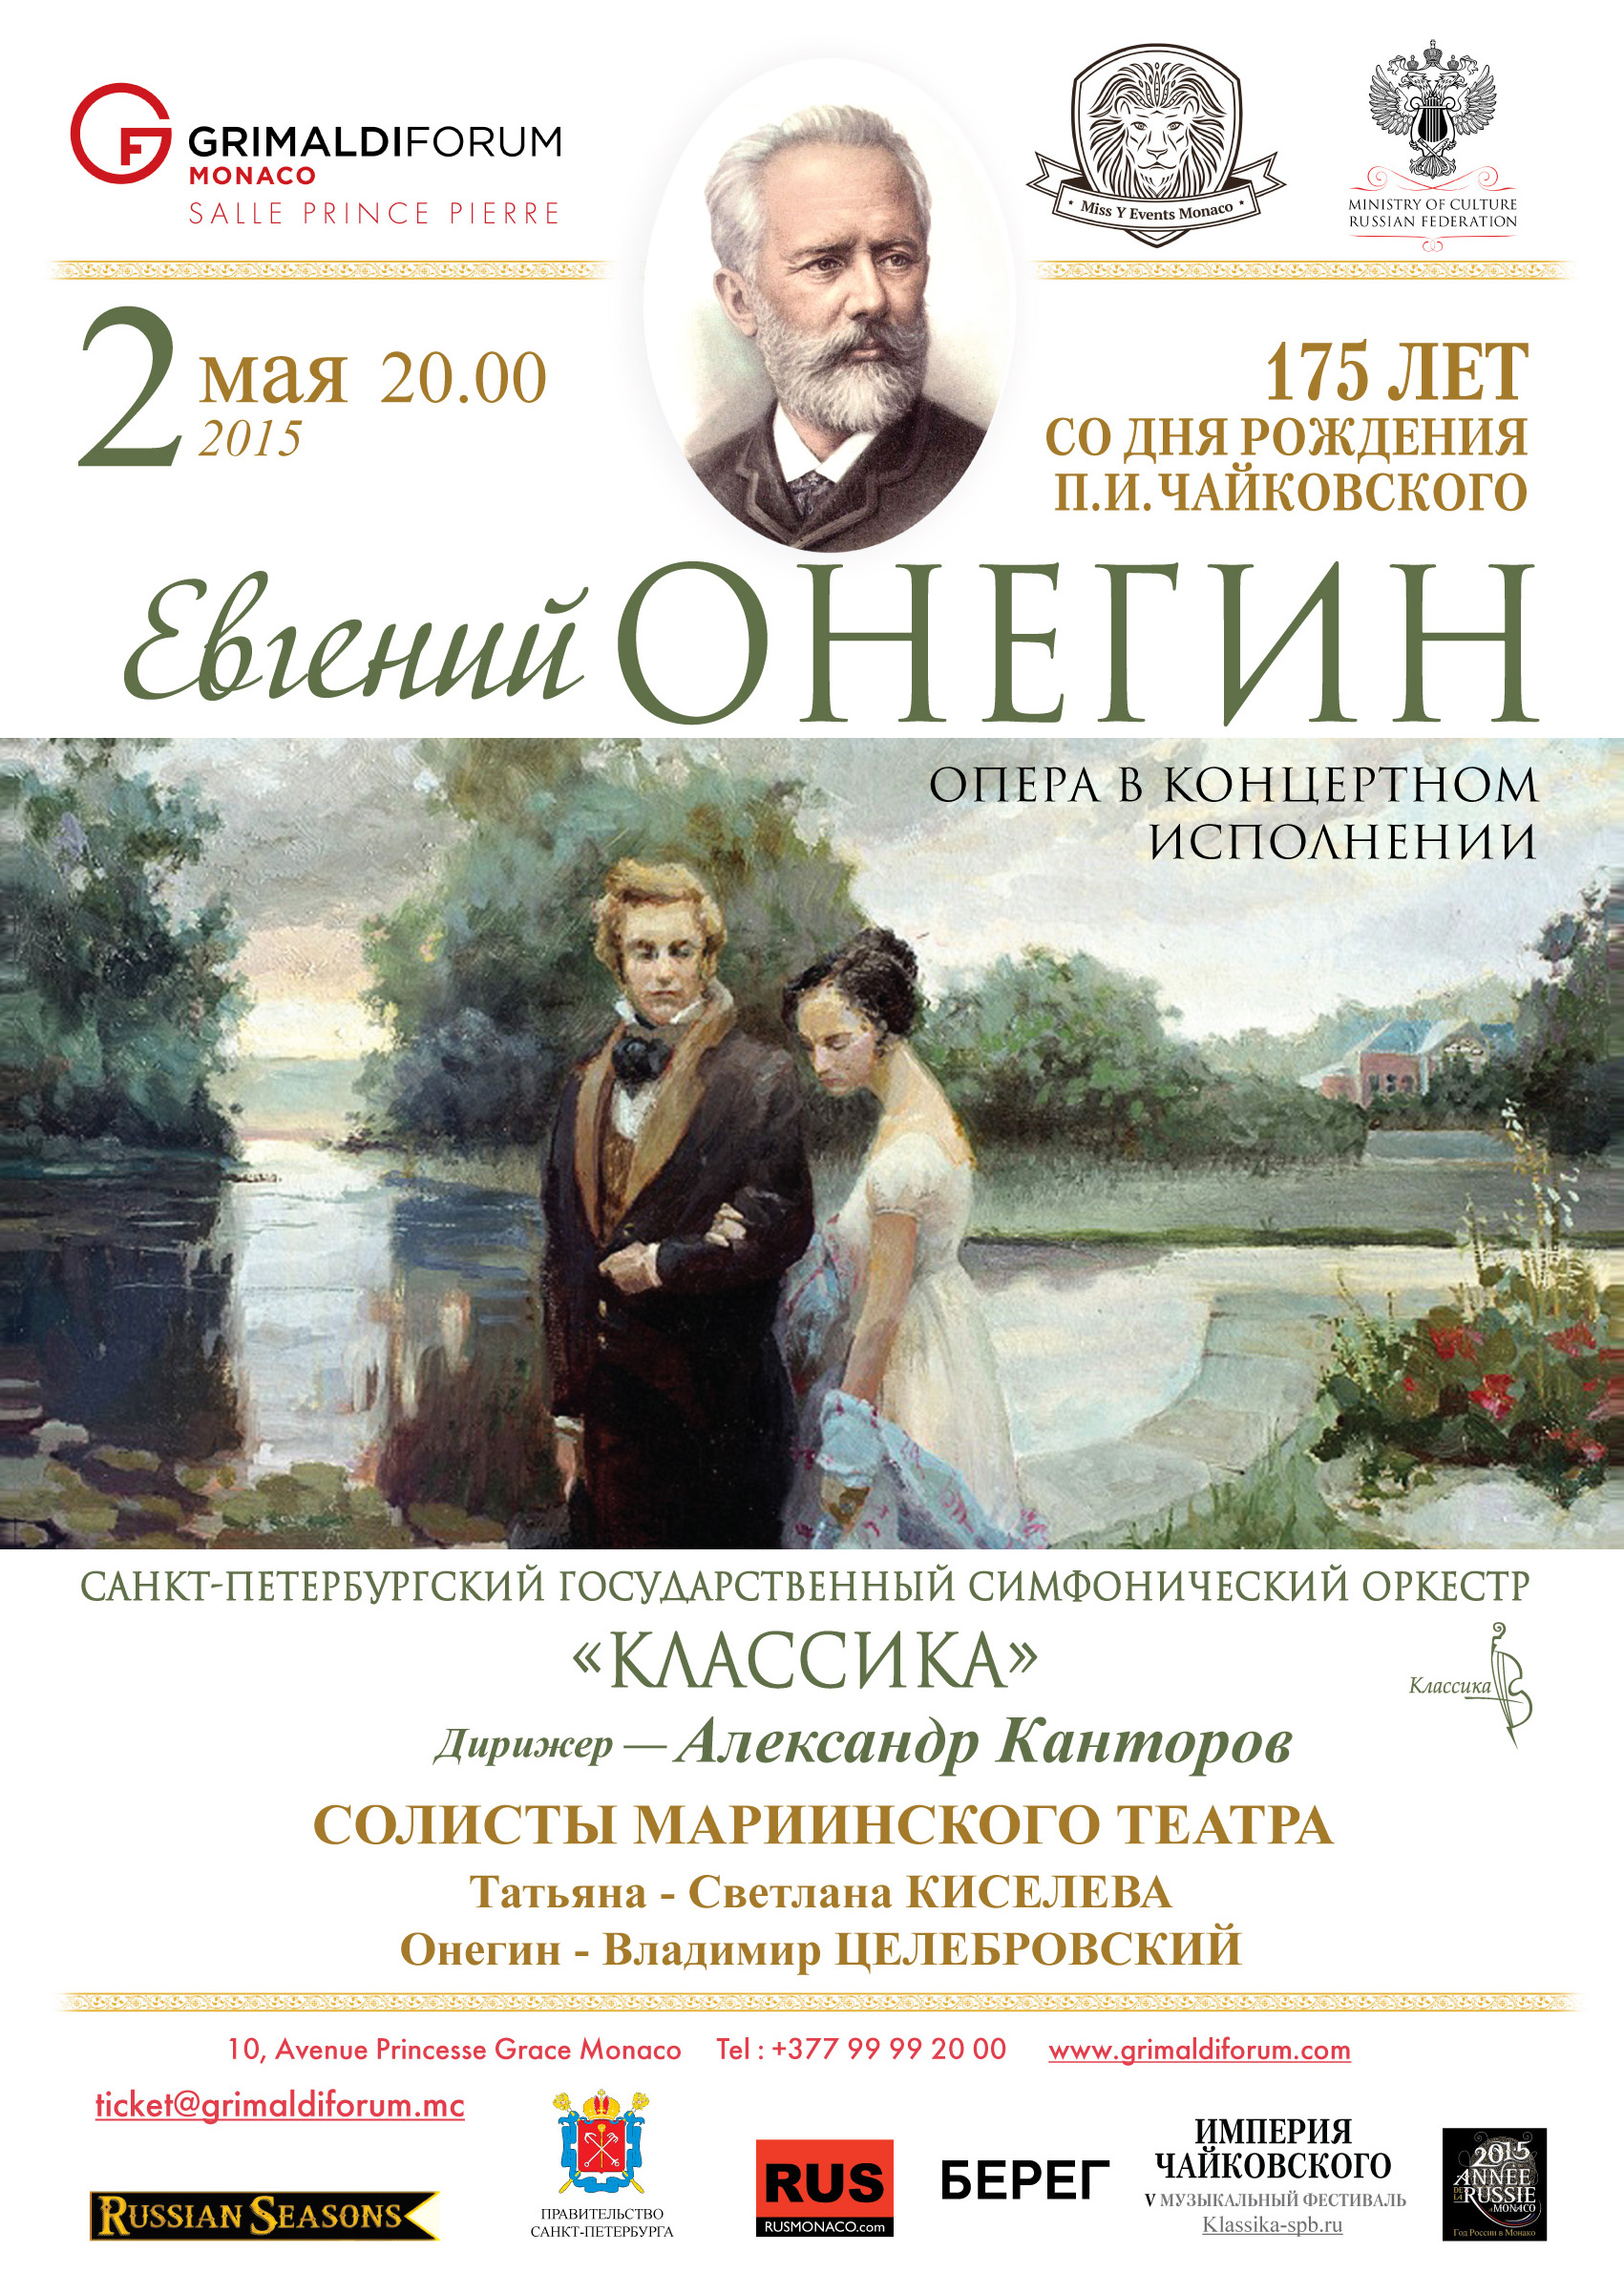 Мариинский театр санкт петербург афиша на июнь. Онегин в опере Чайковского.